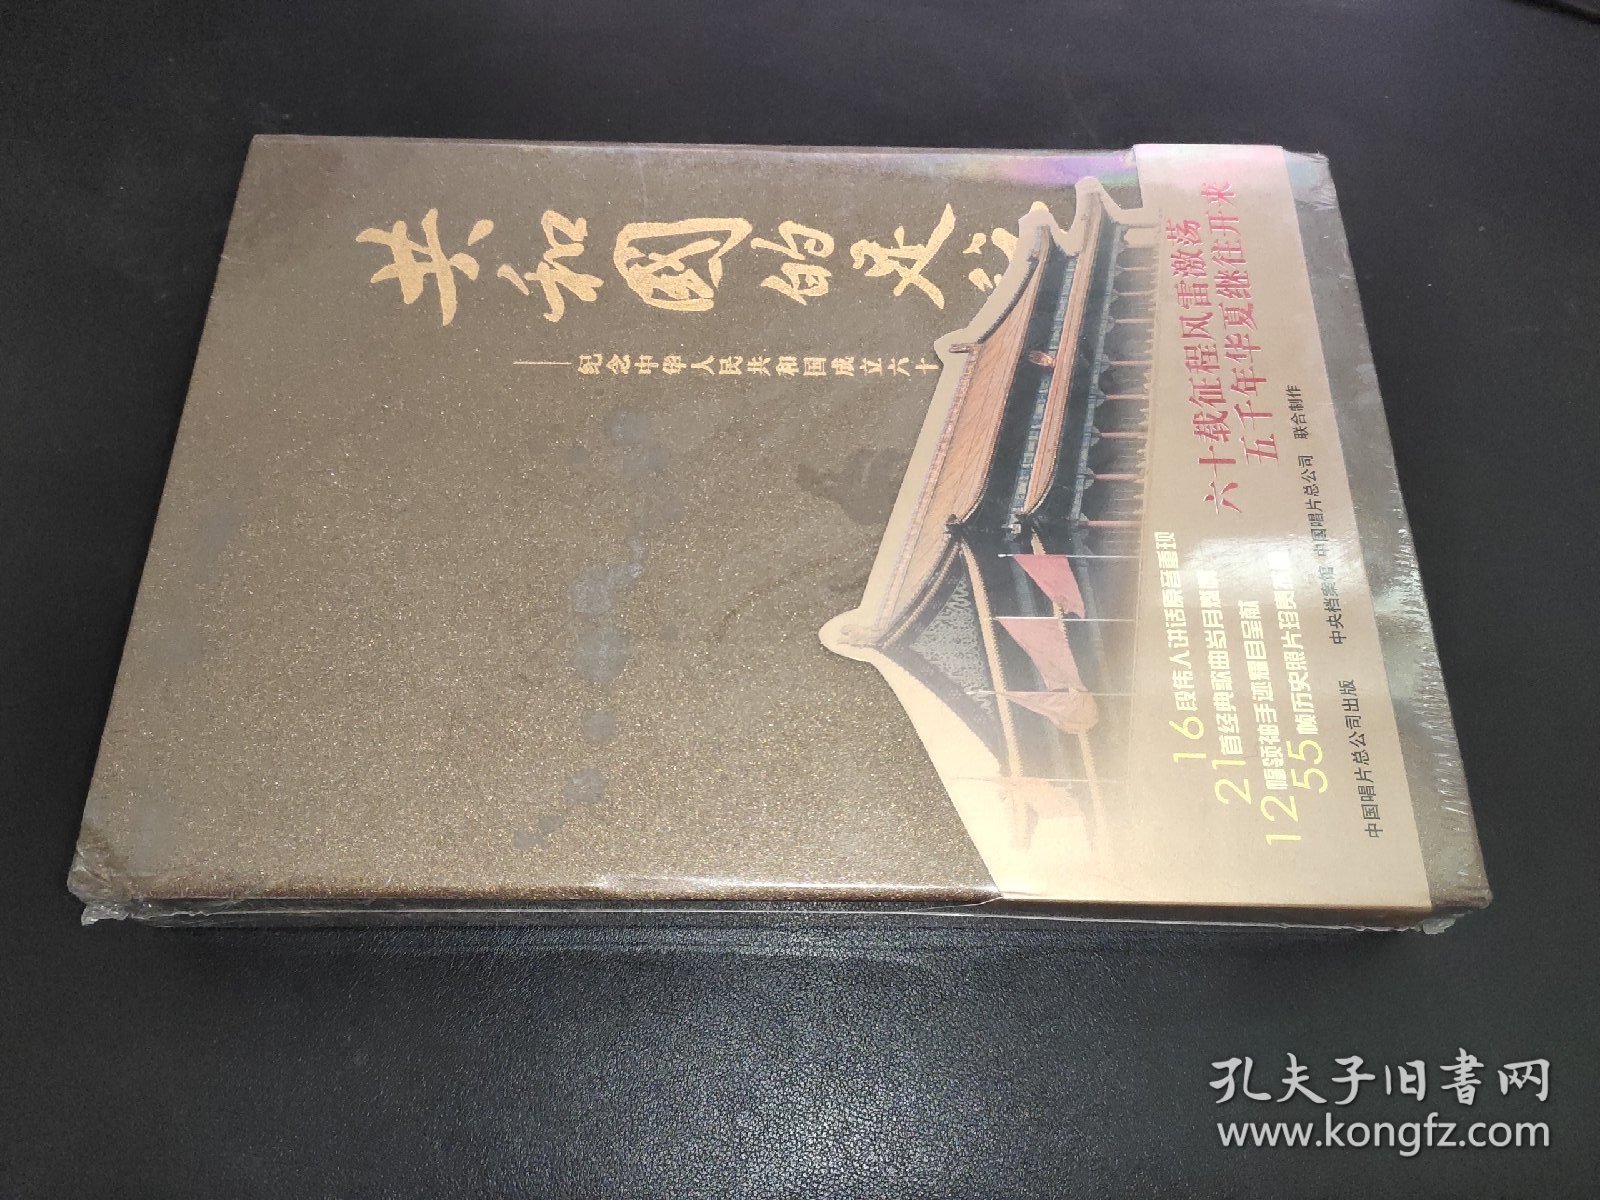 共和国的足迹 纪念中华人民共和国成立六十周年 光盘